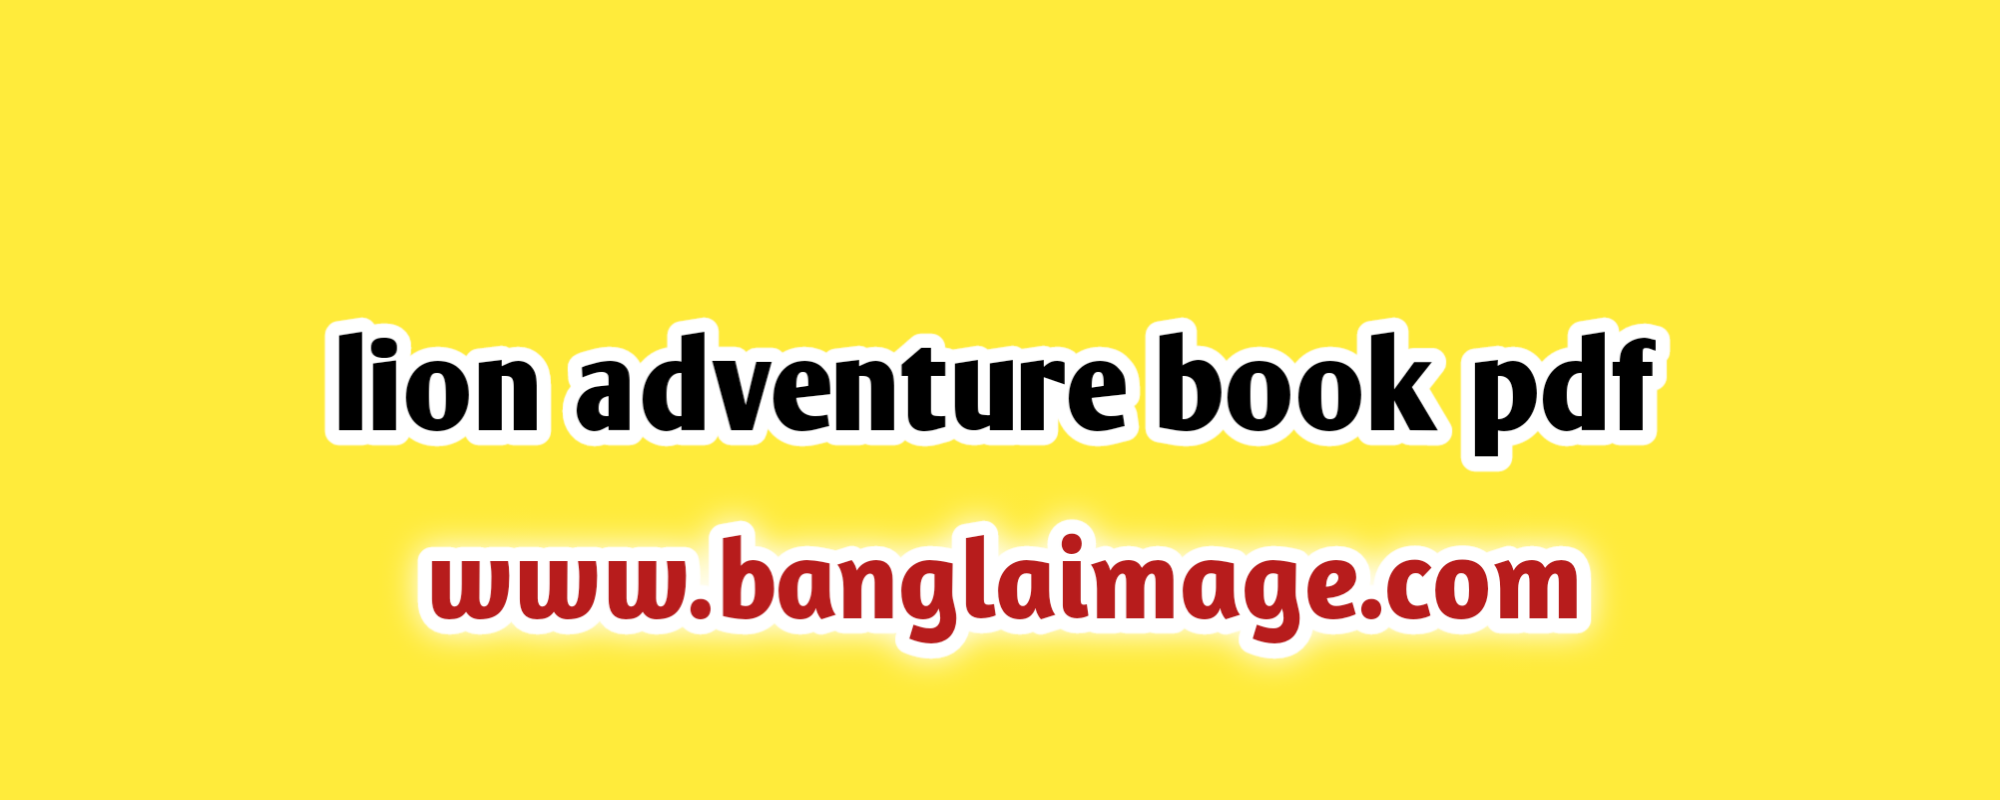 lion adventure book pdf, cub scout lion adventure book , download cub scout lion adventure book pdf, cub scout lion adventure